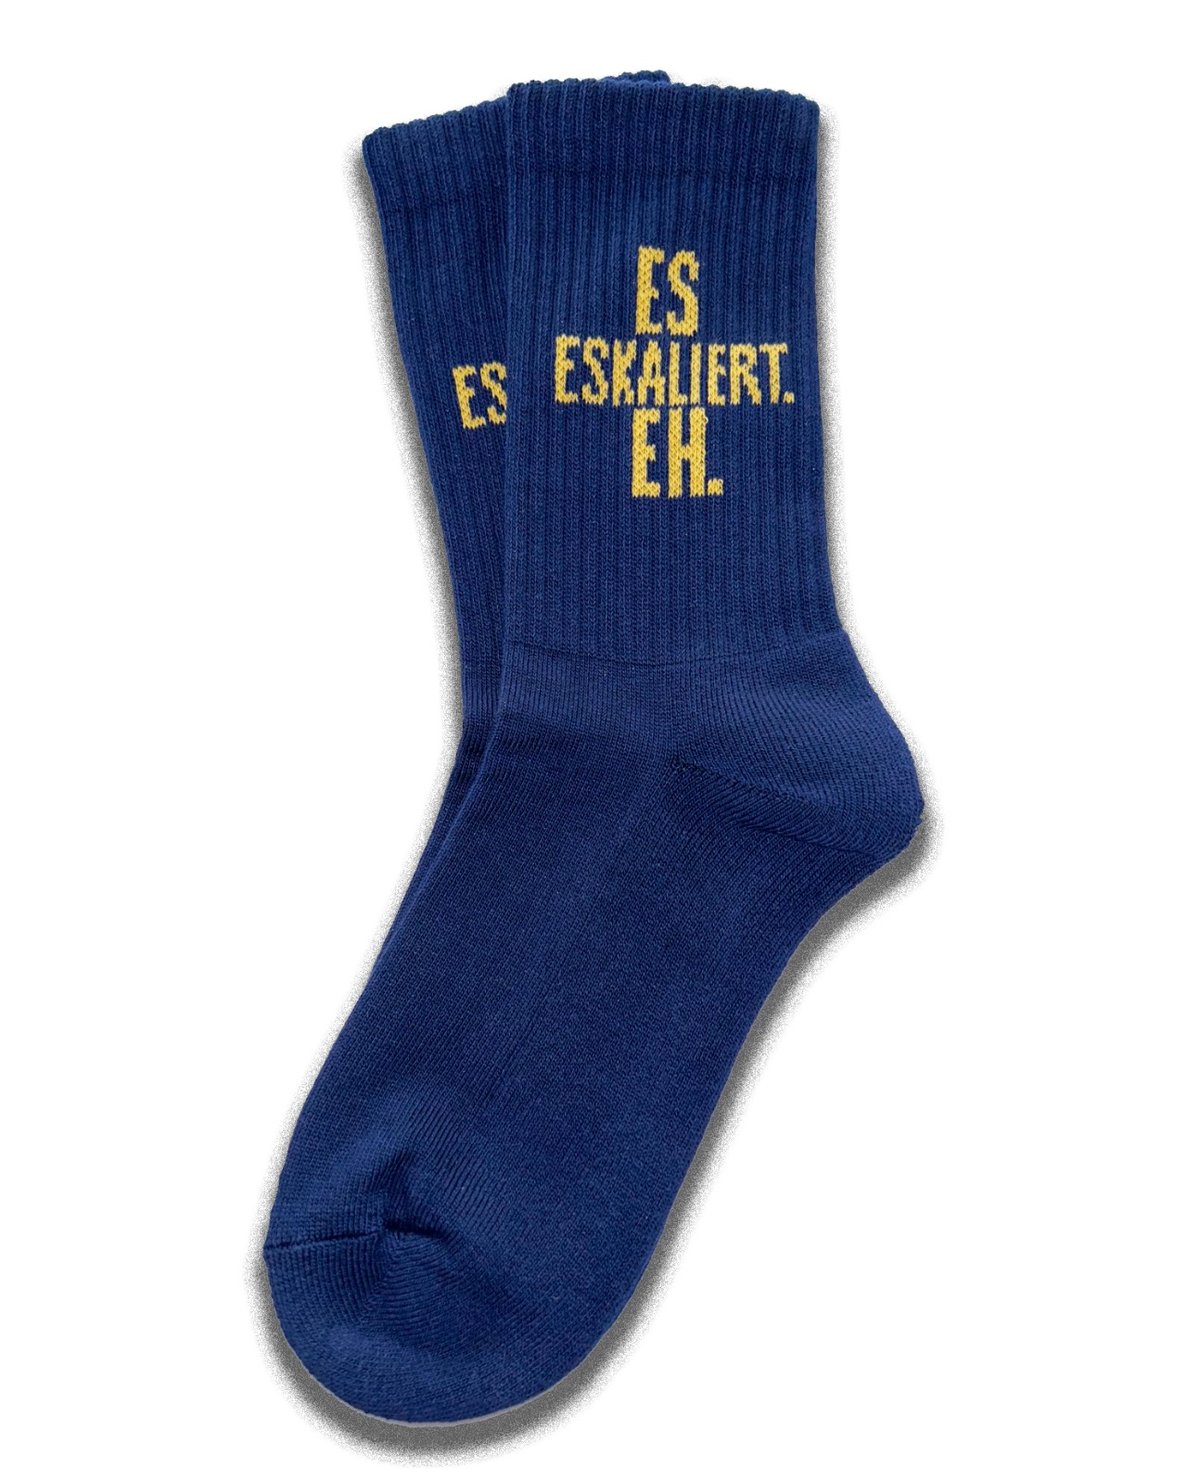 Image of Es Eskaliert Eh Socken (new colorway) navy-yellow